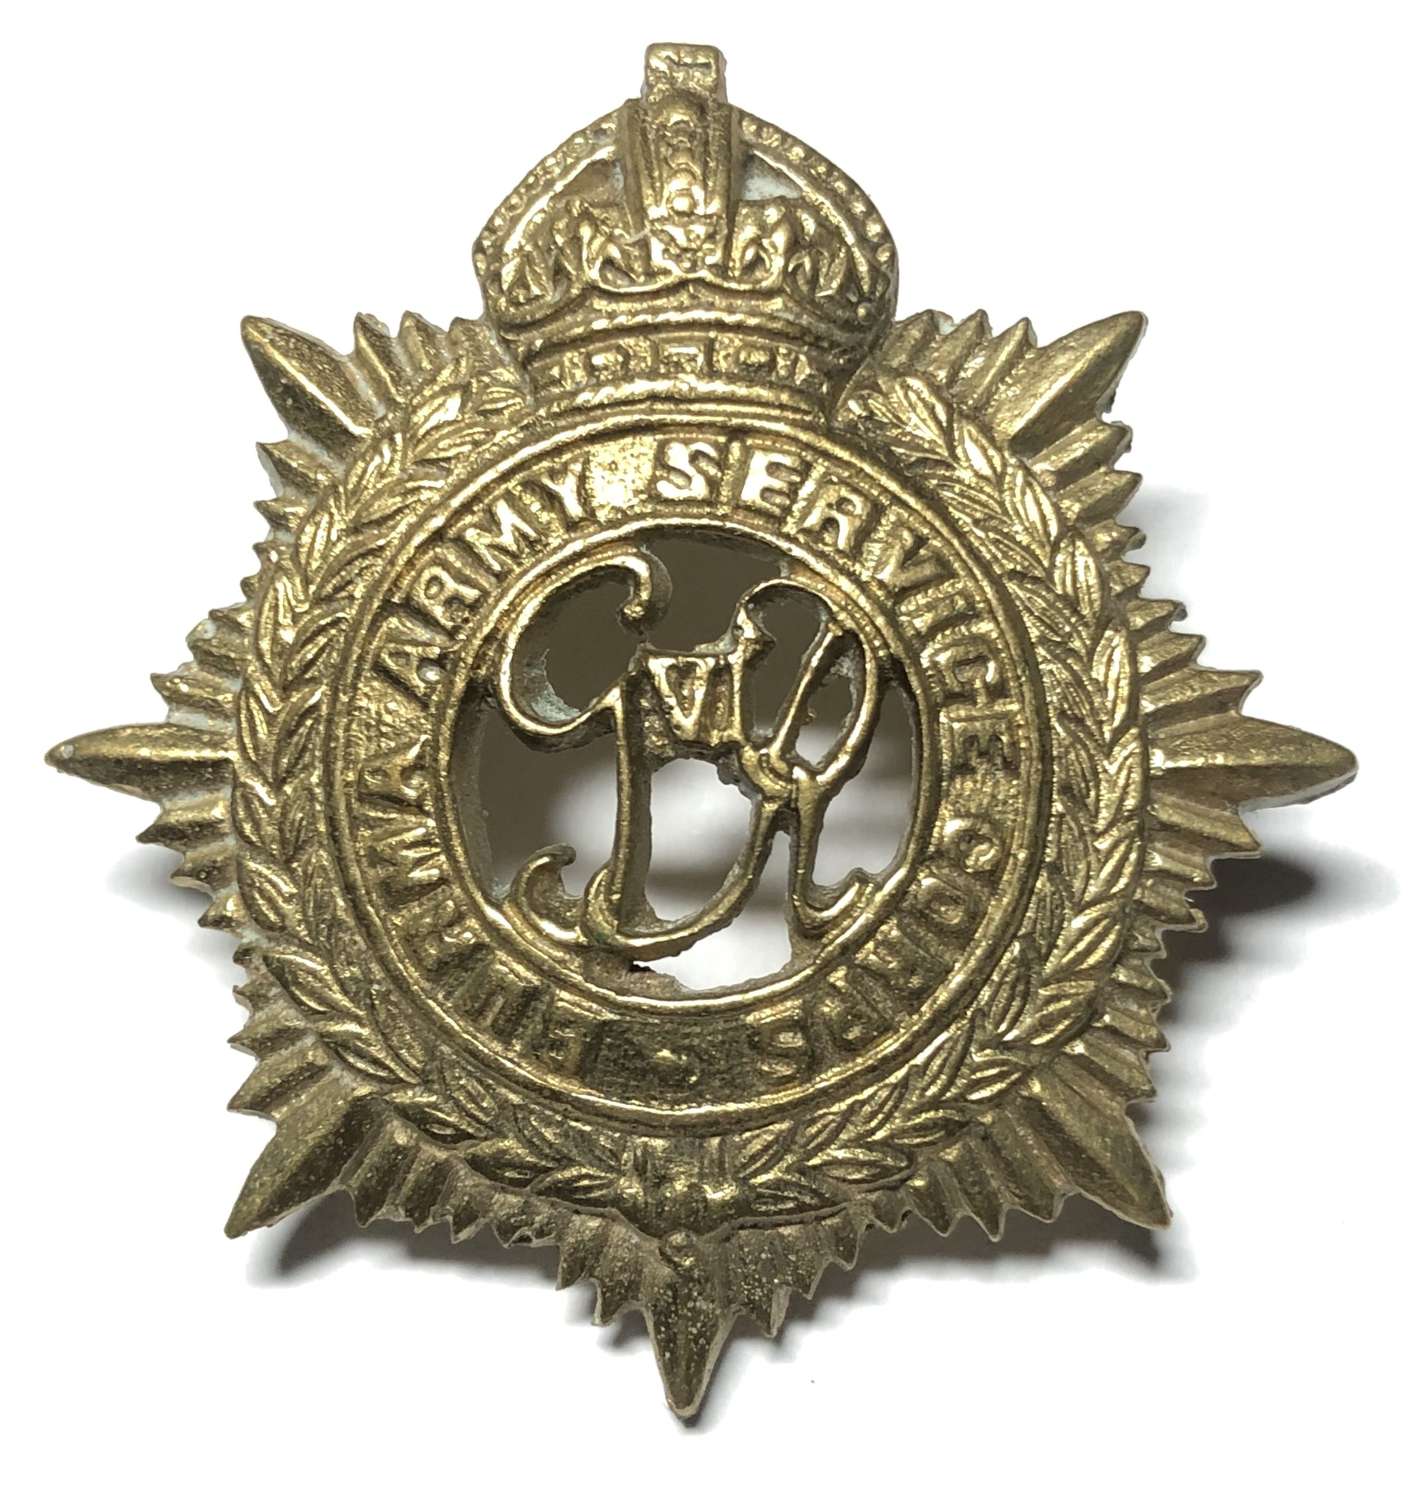 Burma Army Service Corps GVIR cap badge circa 1939-47